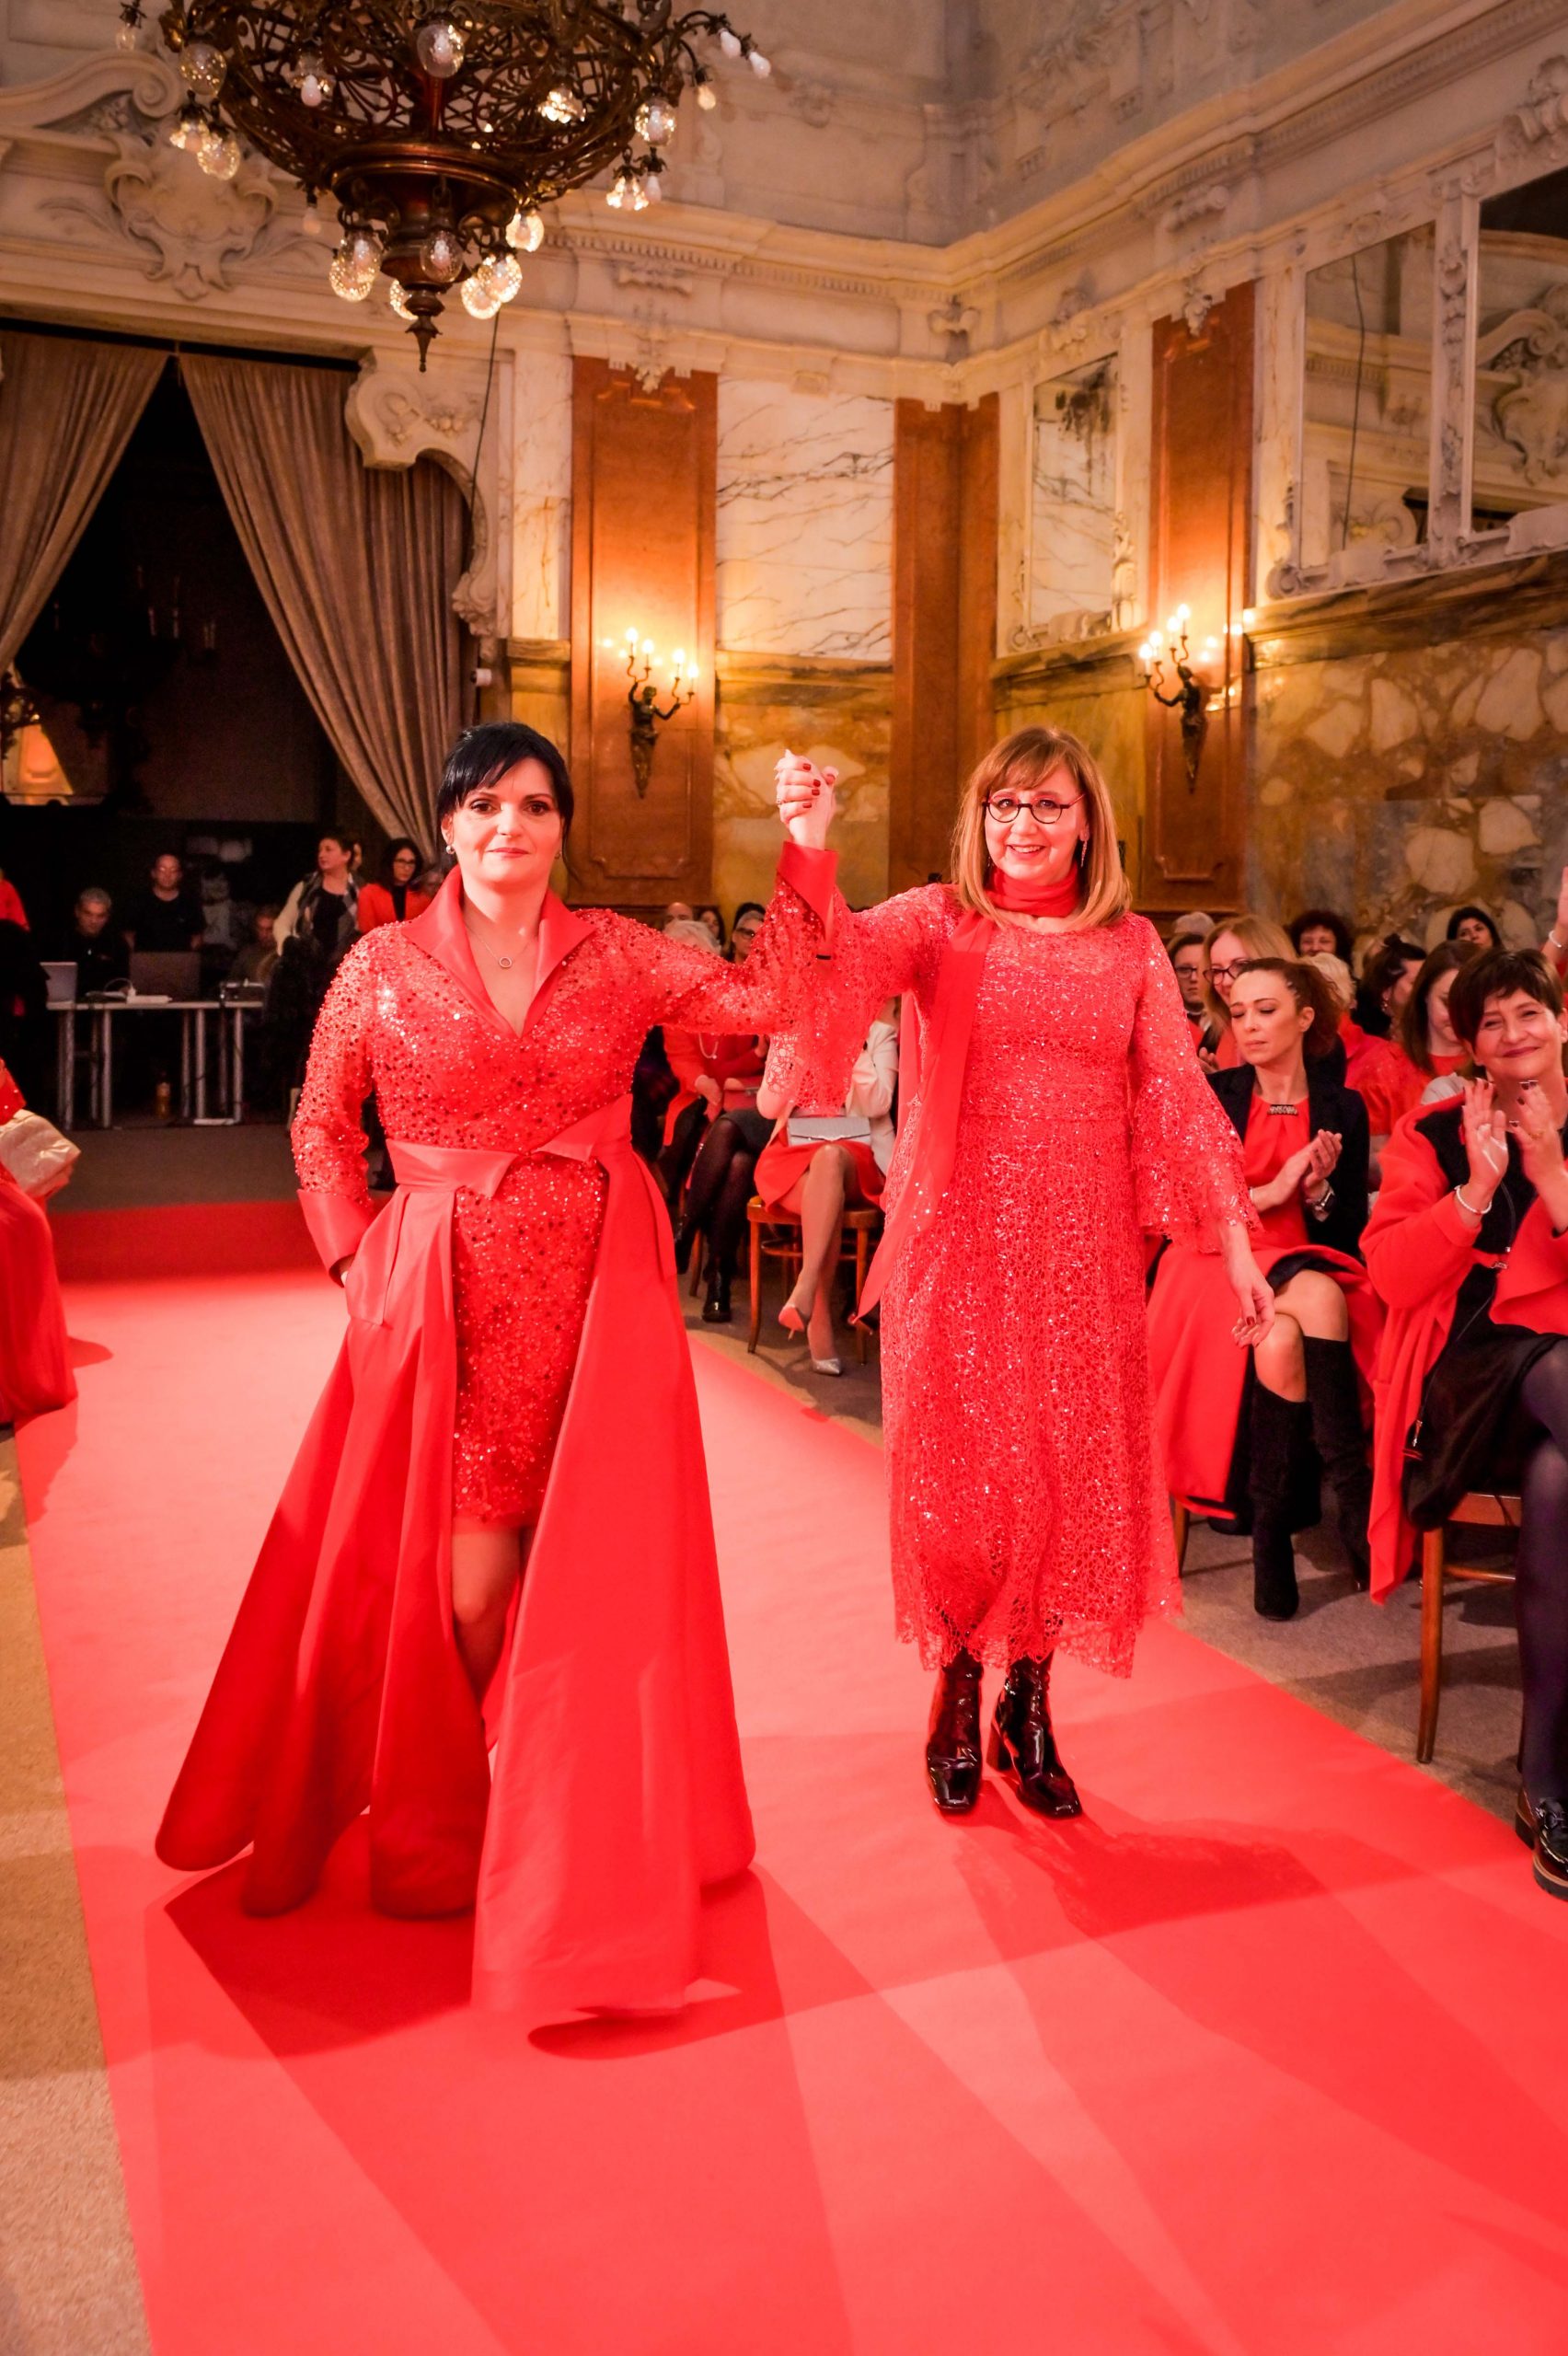 Dan crvenih haljina: Guvernerova palača zablistala u posebnom ruhu